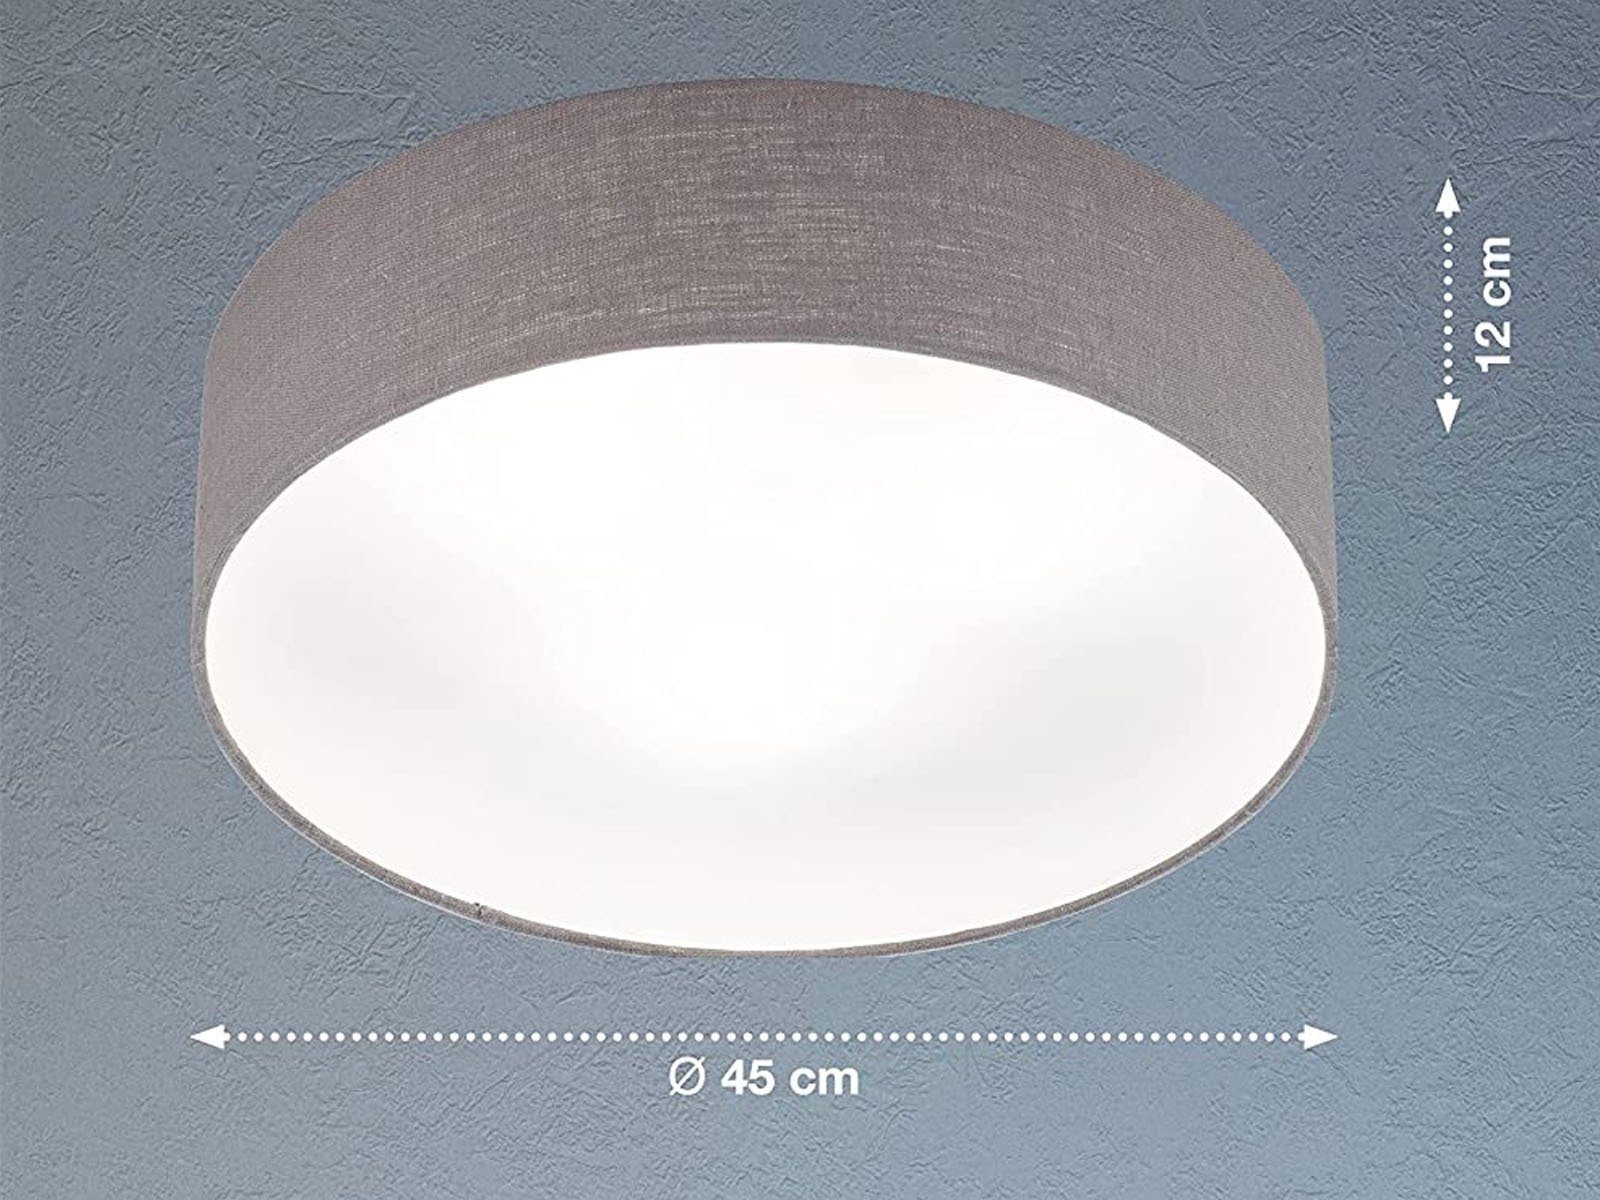 Leinen Grau LED flach Lampenschirm Dimmfunktion, Ø45cm meineWunschleuchte Warmweiß, Decke wechselbar, LED Designklassiker Deckenleuchte, Stoff-Lampe